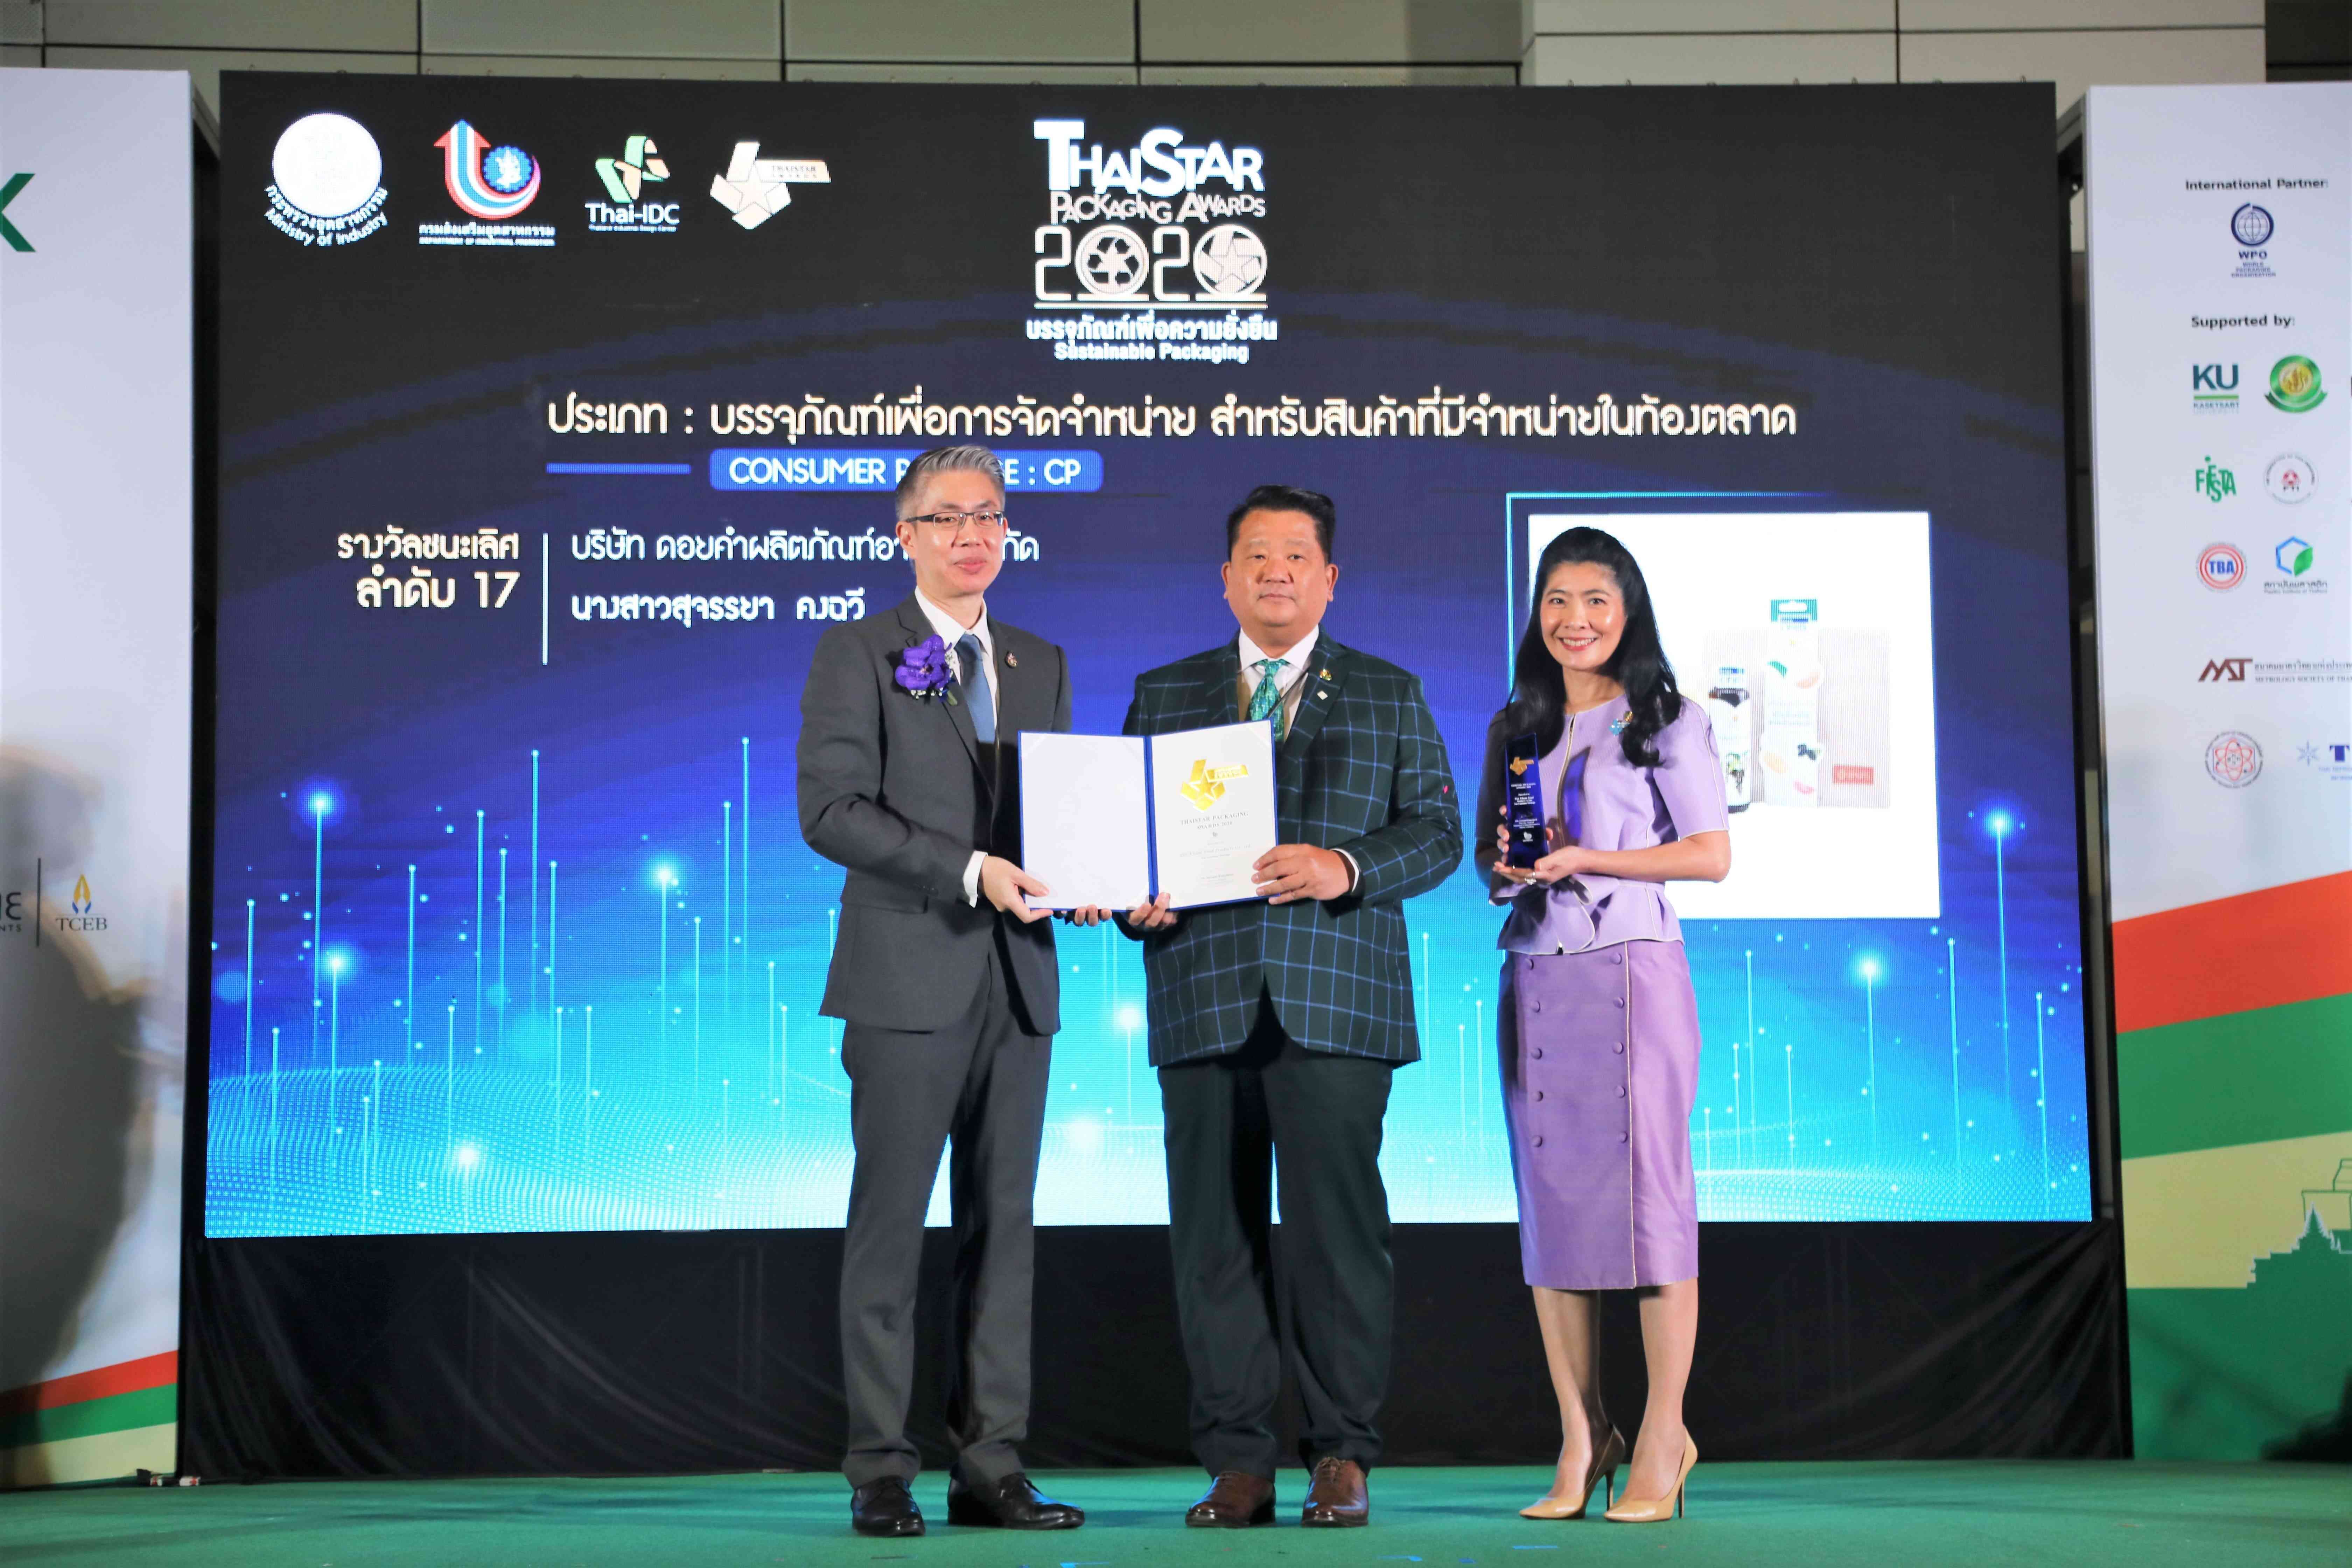 "บรรจุภัณฑ์ผลิตภัณฑ์น้ำผลไม้สกัดเย็น ดอยคำ" ได้รับรางวัลชนะเลิศการประกวดบรรจุภัณฑ์ไทย ประจำปี 2563